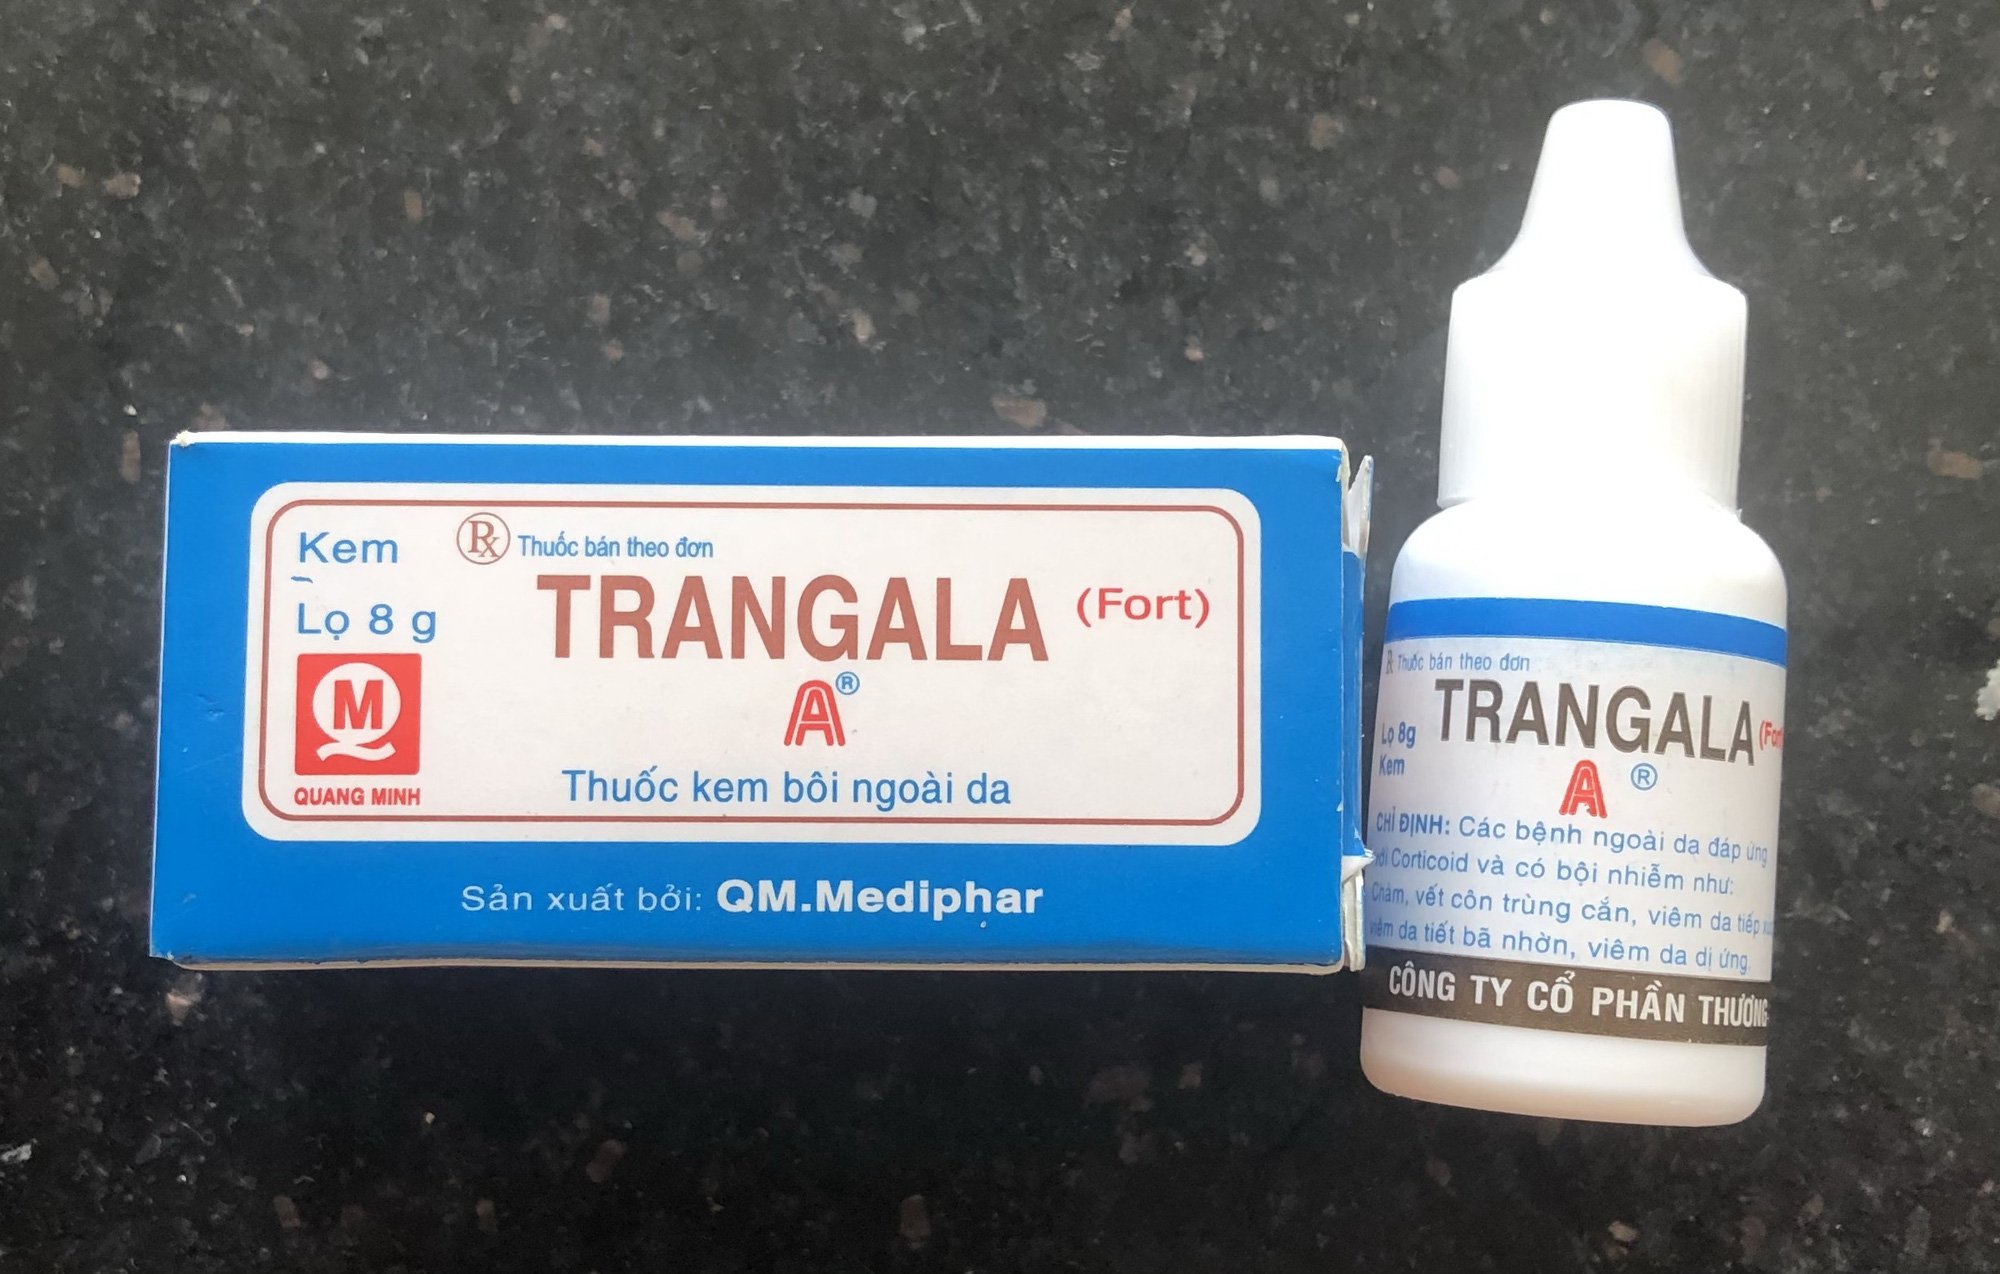 Một doanh nghiệp phải tự thu hồi sản phẩm vì bị tố nhái tên thuốc Trangala - Ảnh 1.